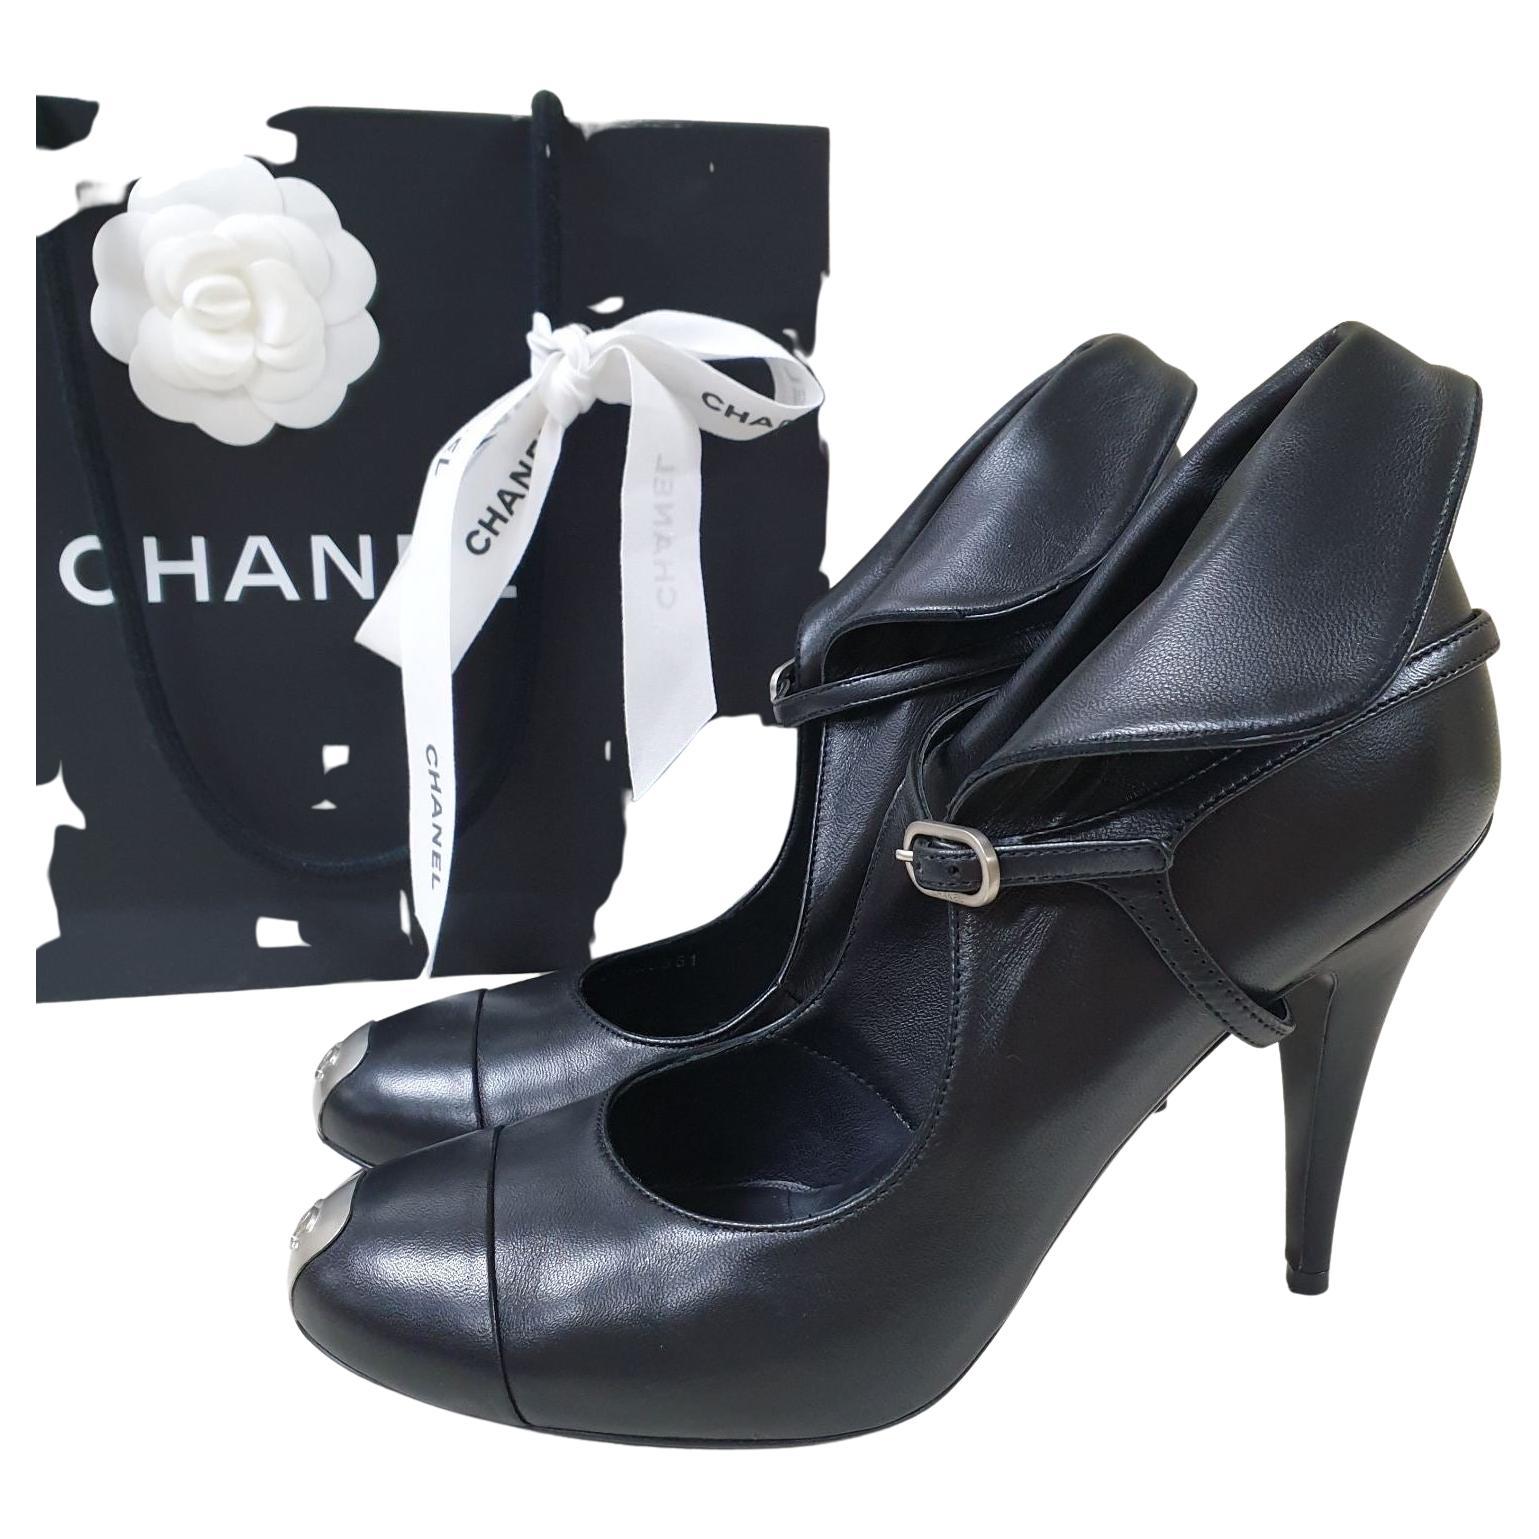 Chanel Black Sandals - 79 For Sale on 1stDibs